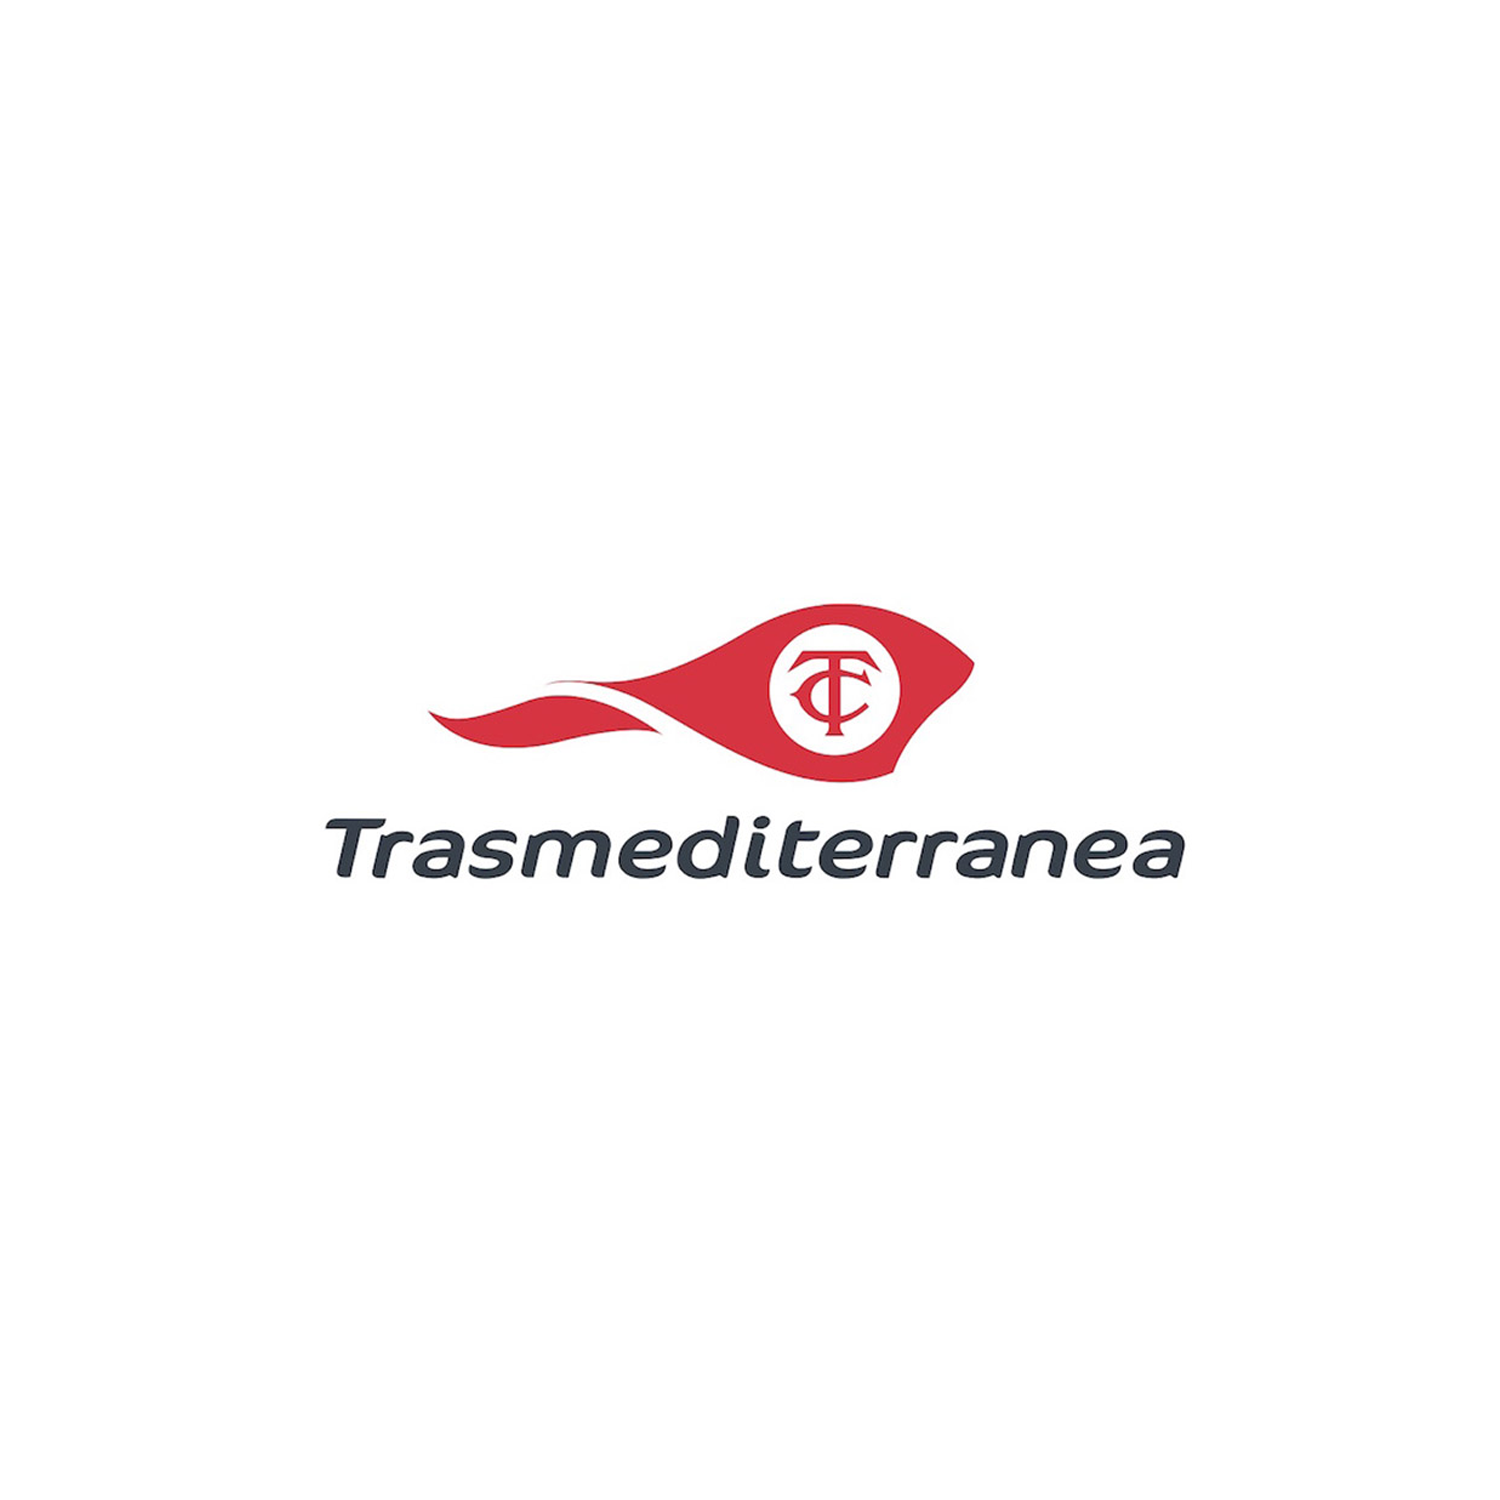 Transmediterranea Logo